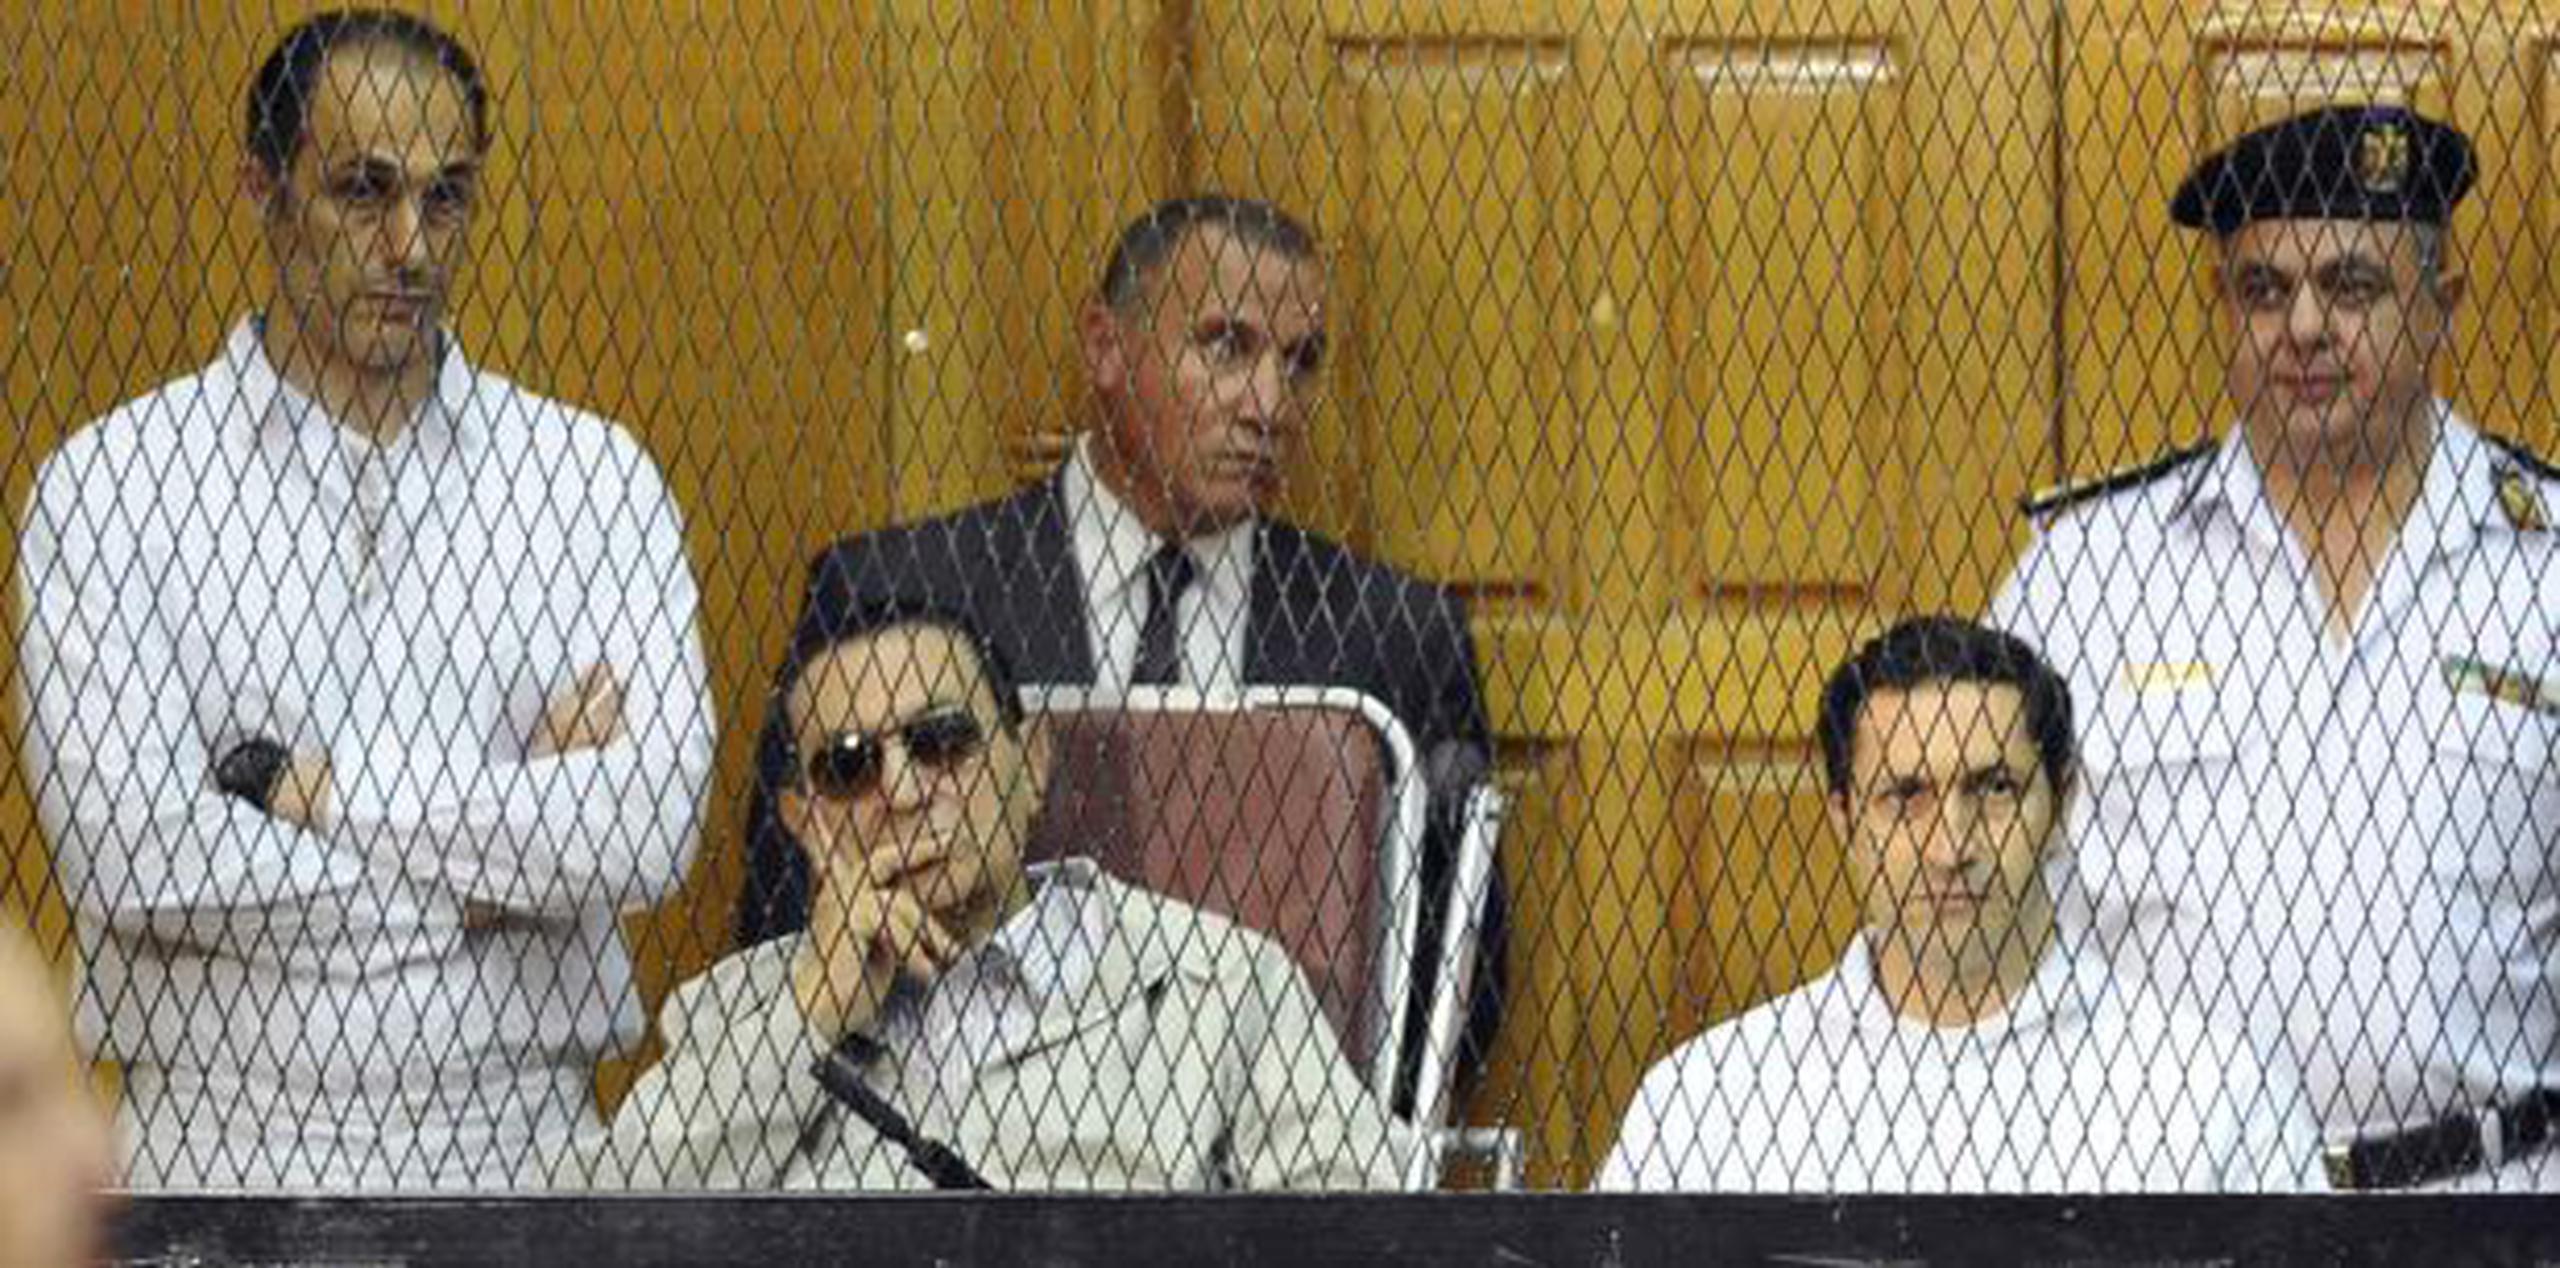 Tanto Hosni Mubarak como sus hijos fueron sentenciados a tres años de cárcel por corrupción en el 2015. (AP)